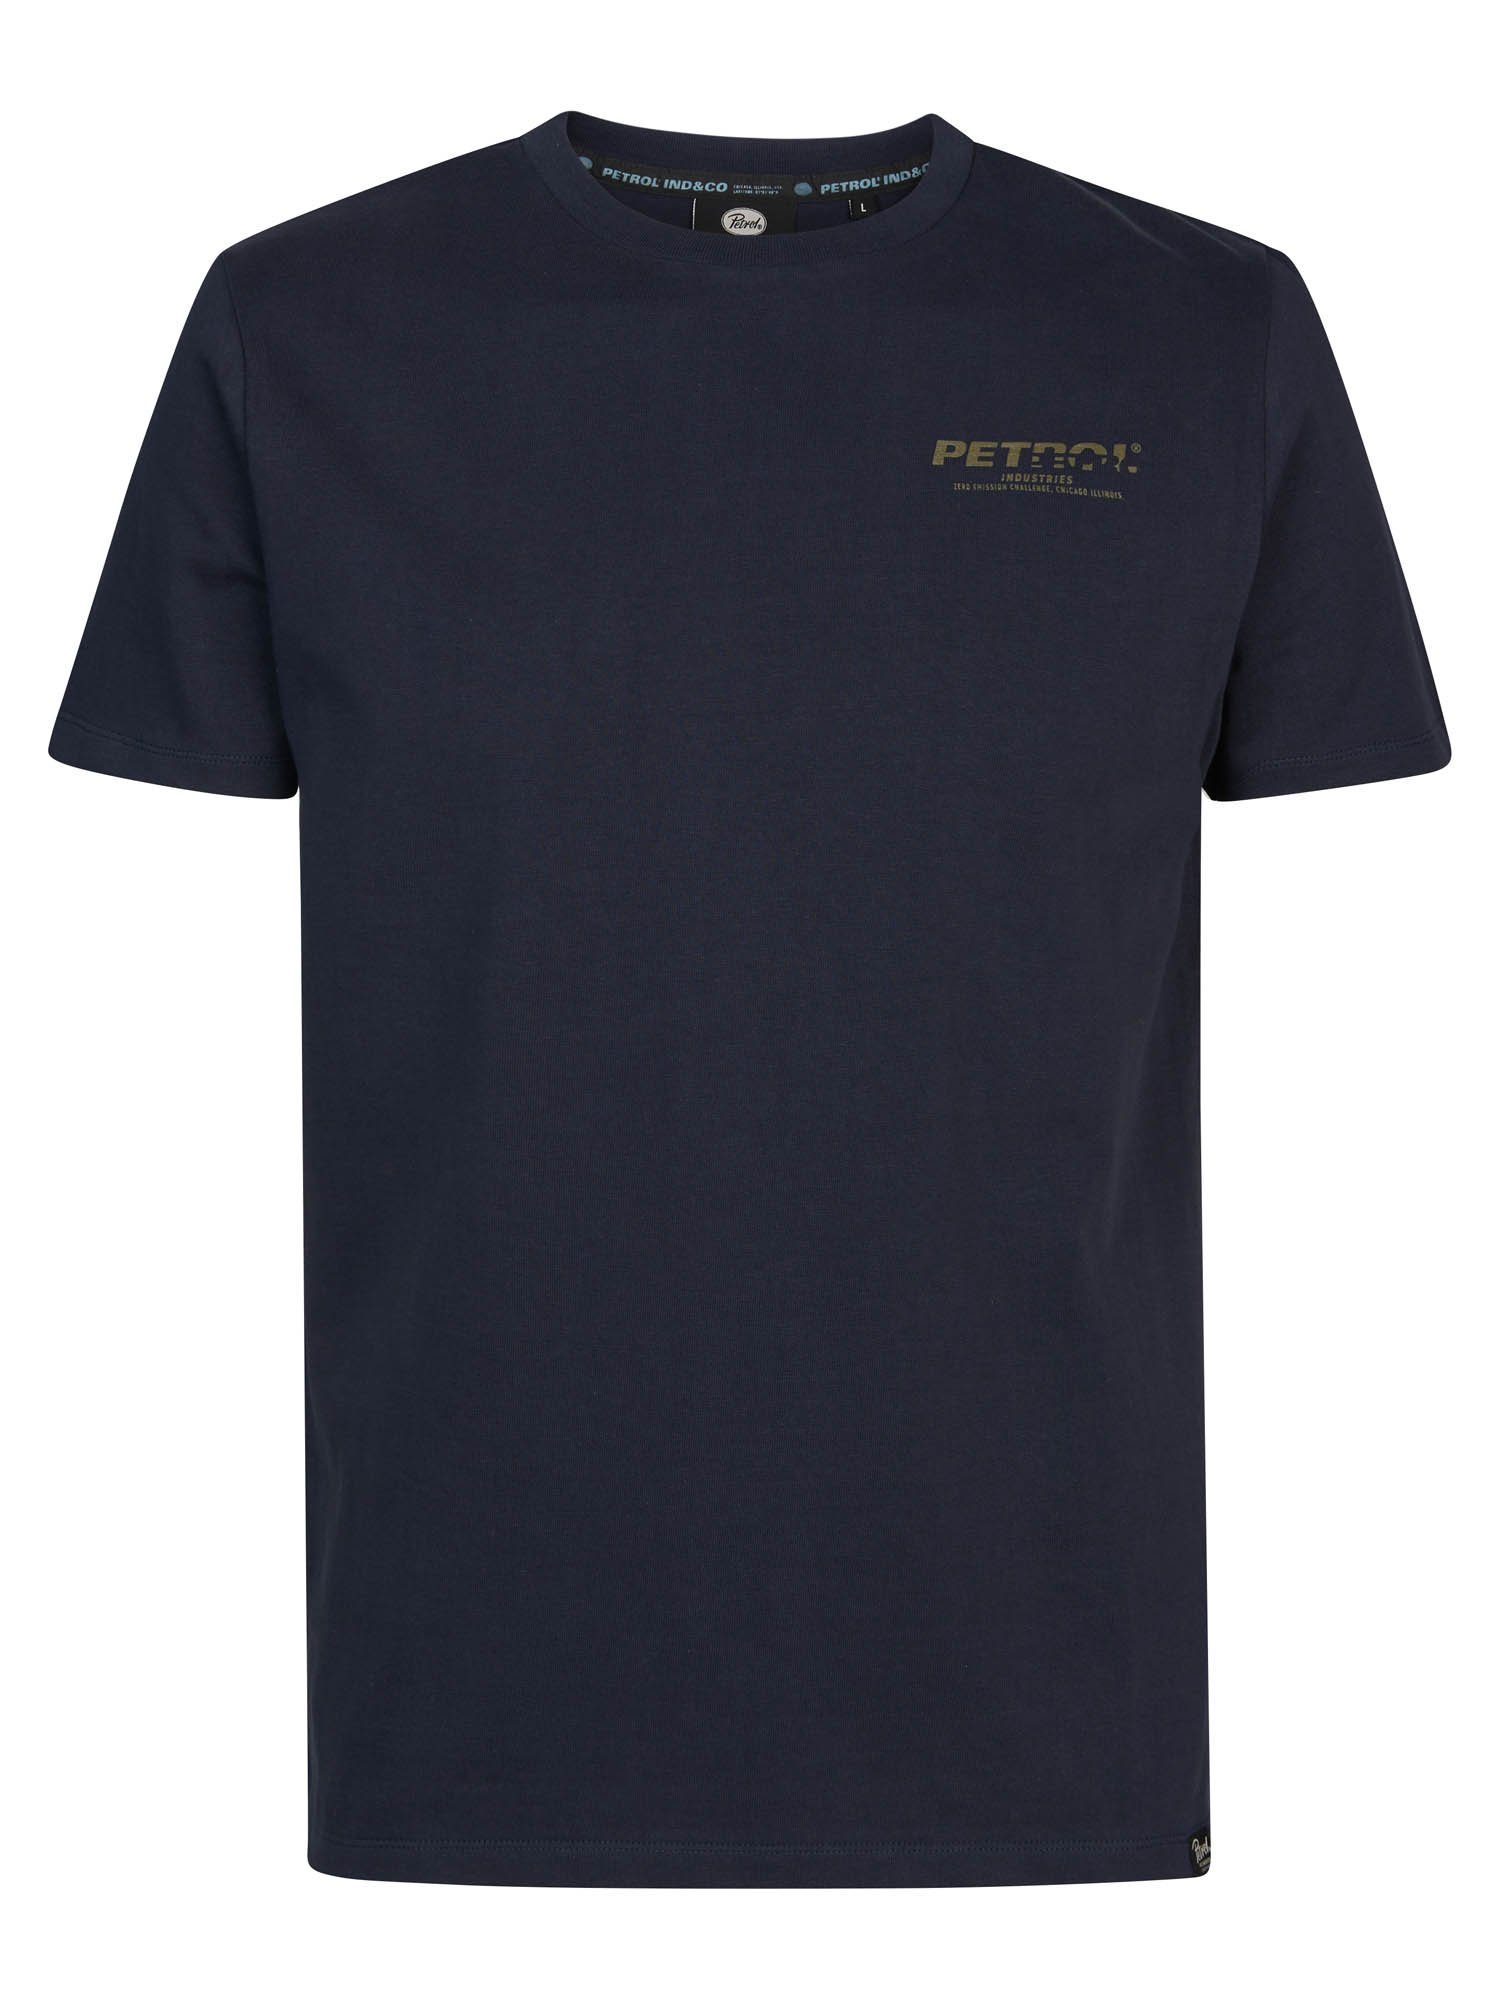 Petrol SS Industries T-Shirt Men T-Shirt